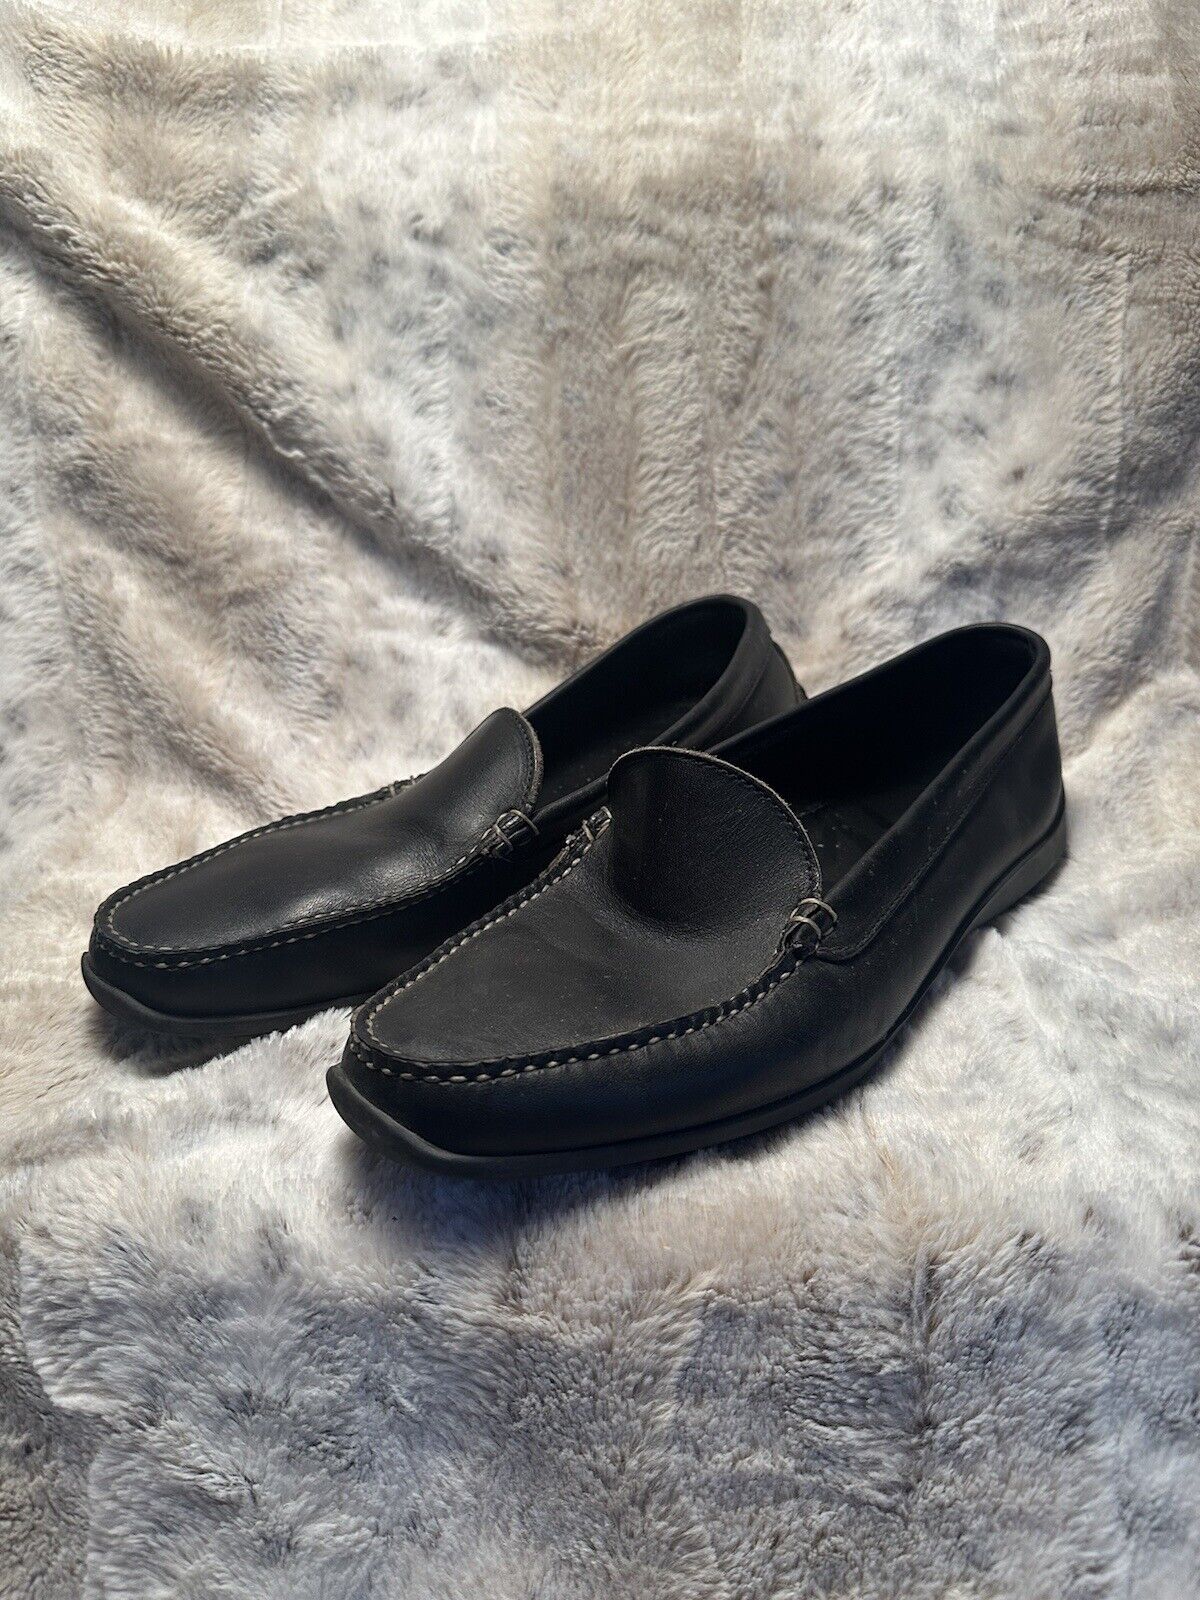 FootJoy Men’s Black Loafer Golf Shoe, Size 12